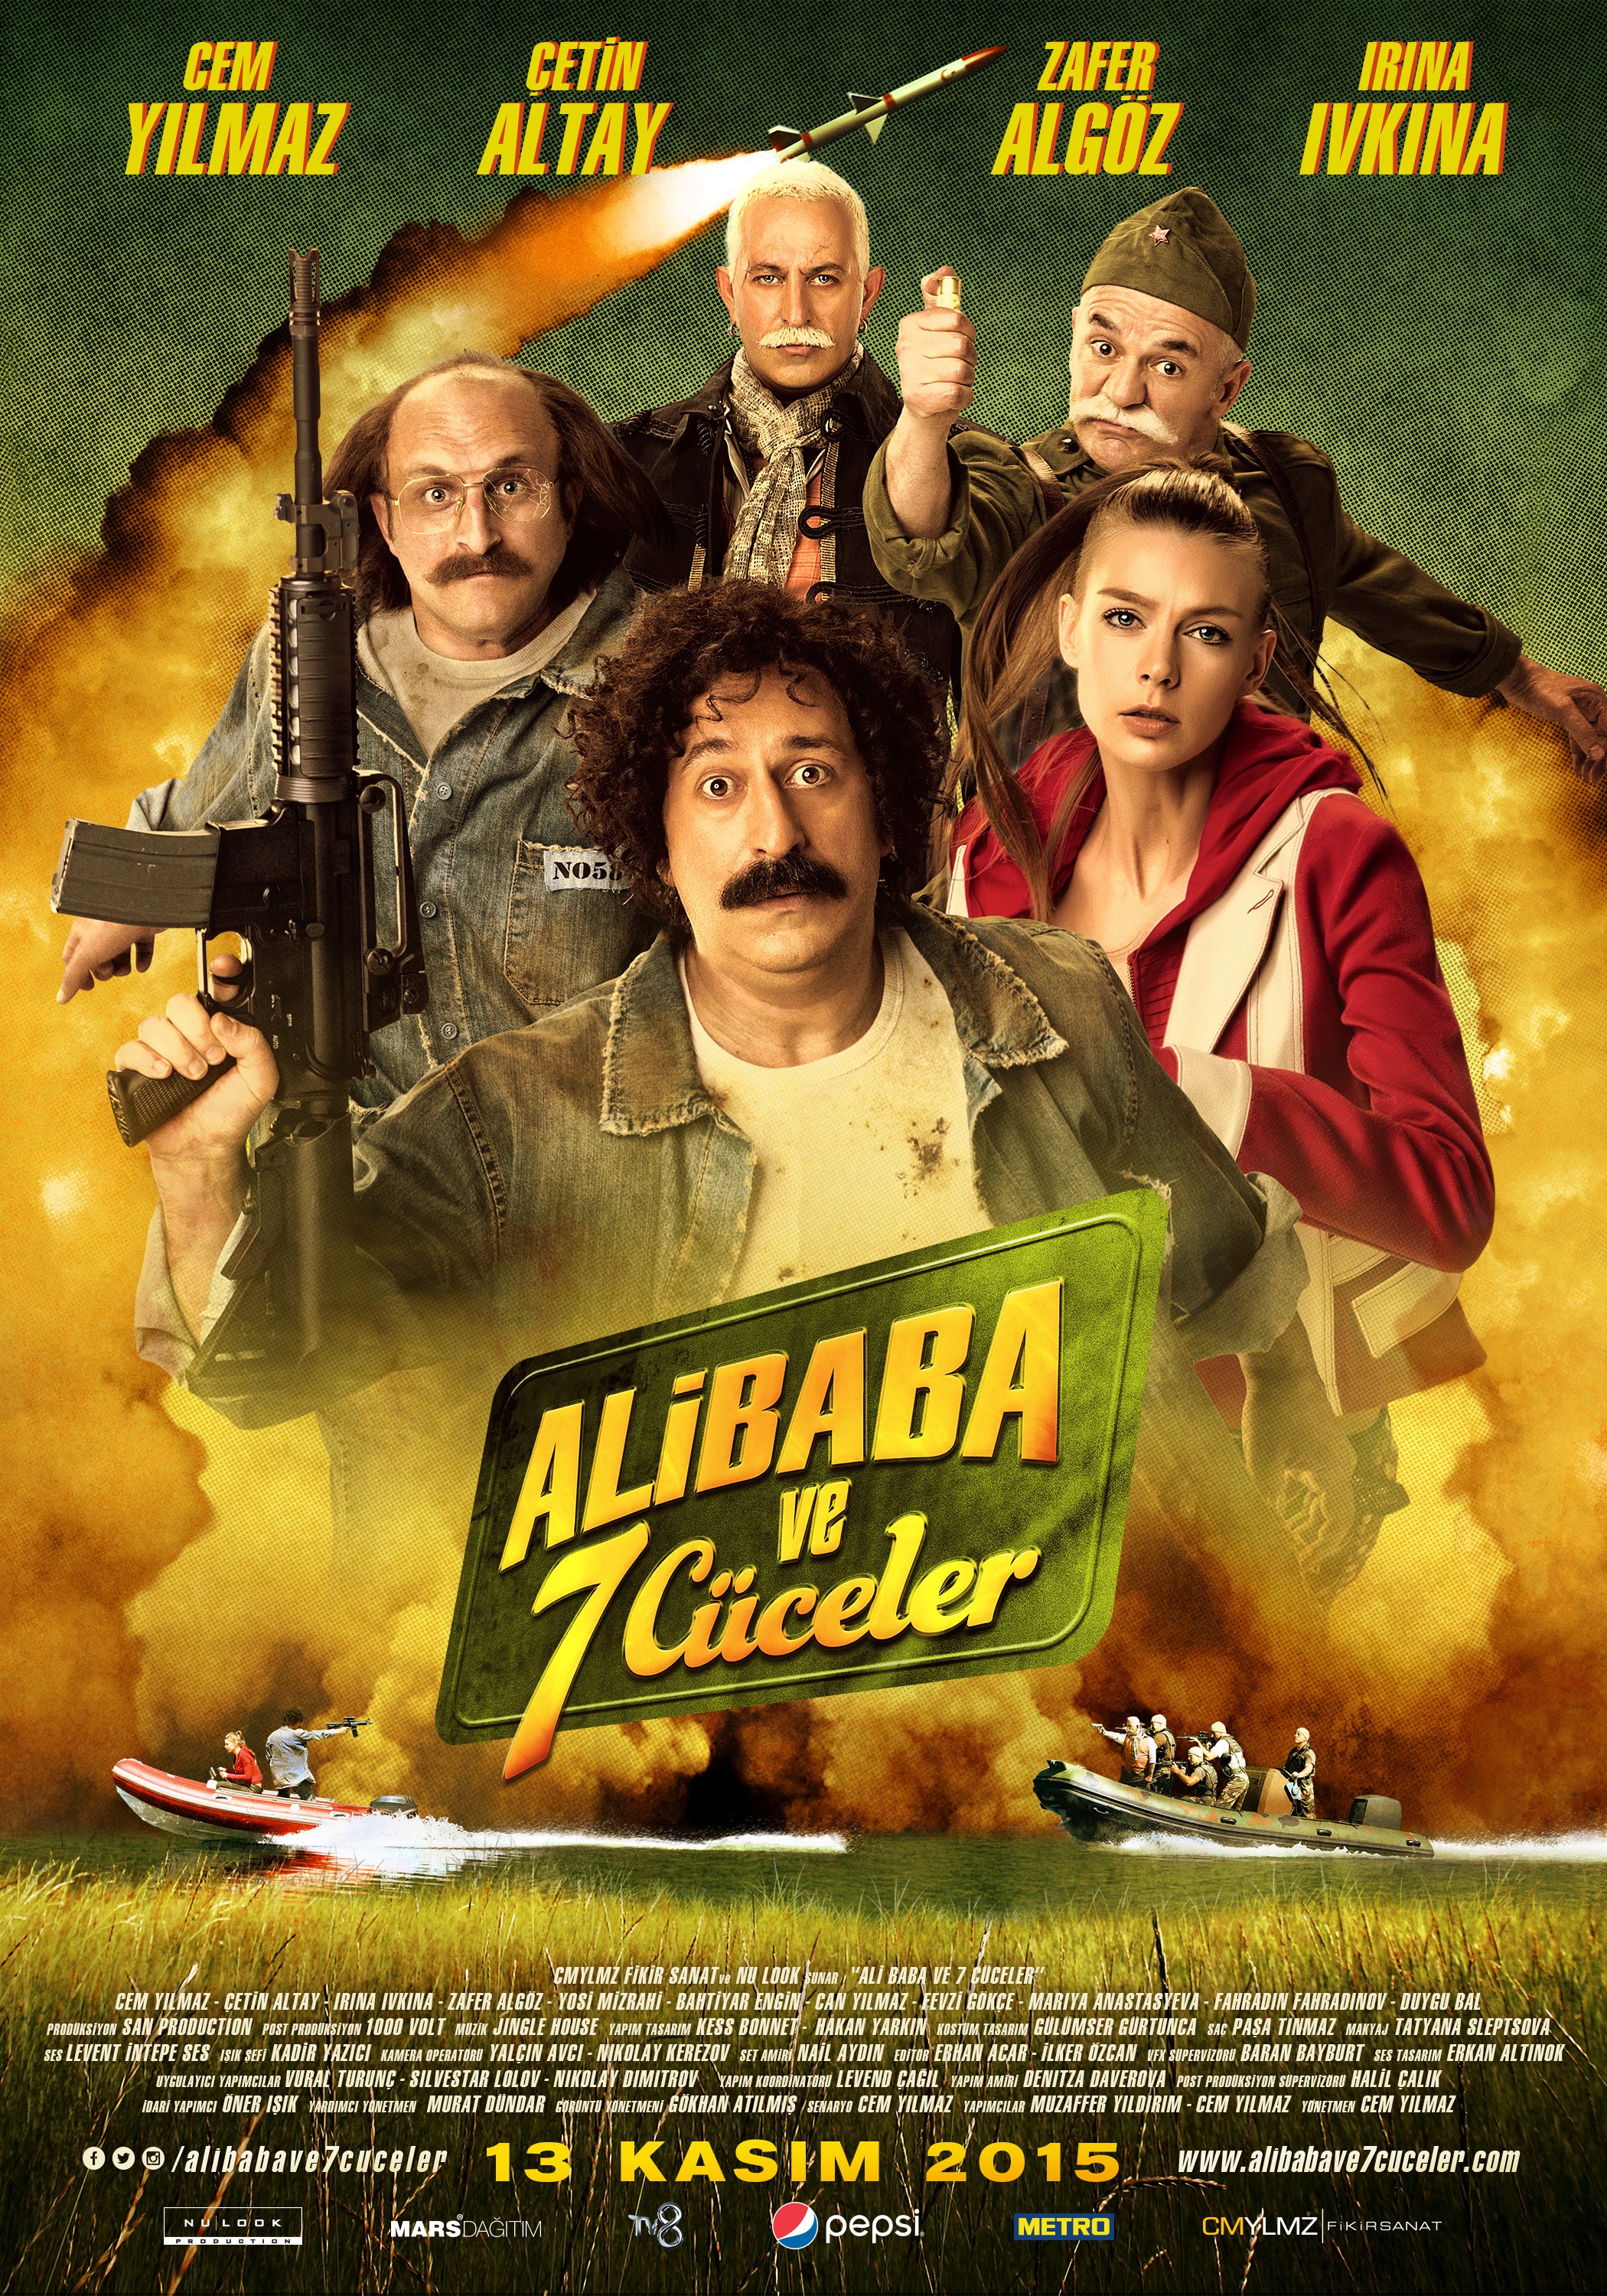 Mega Sized Movie Poster Image for Ali Baba ve 7 Cüceler (#3 of 4)